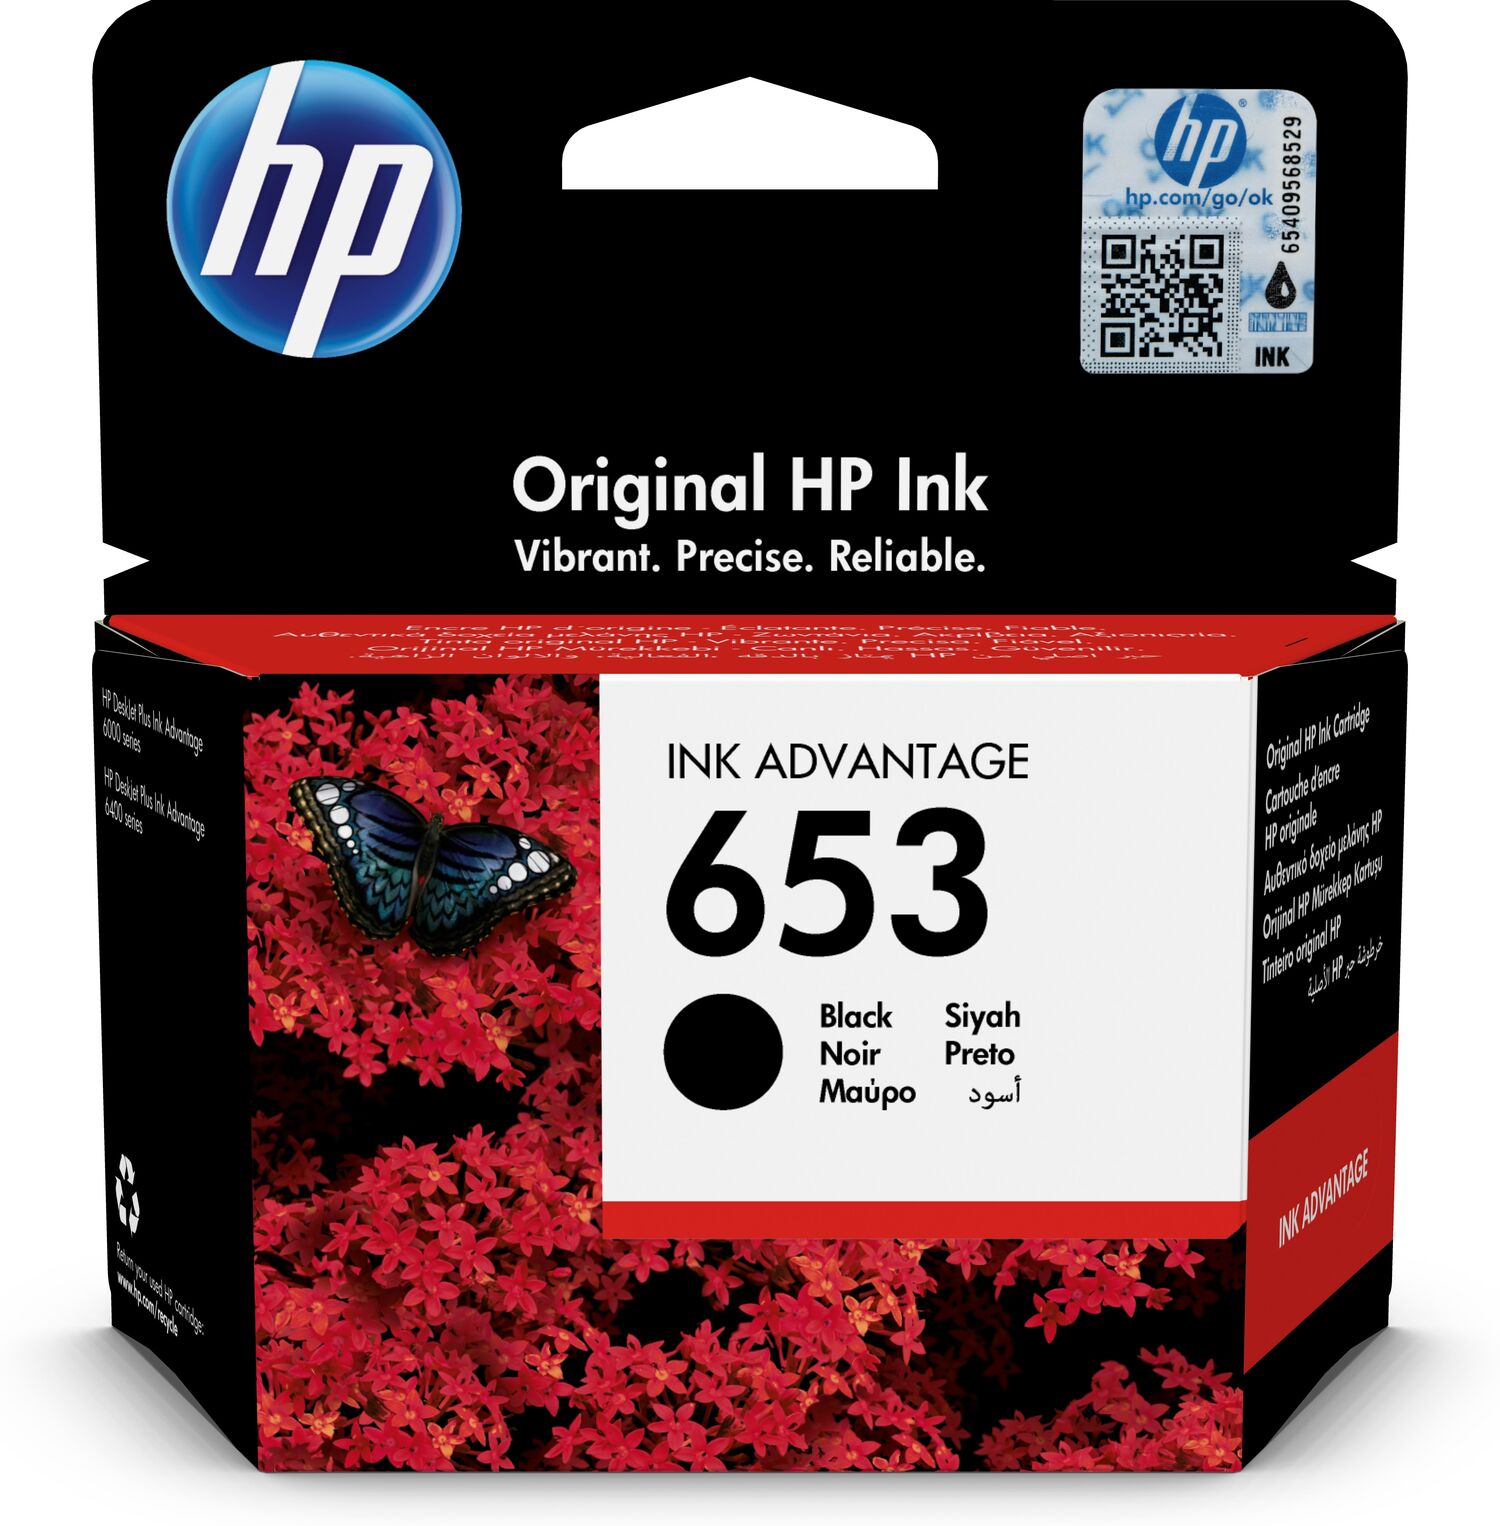 Cartouche HP 912 (3YL80AE) noir - cartouche d'encre de marque HP